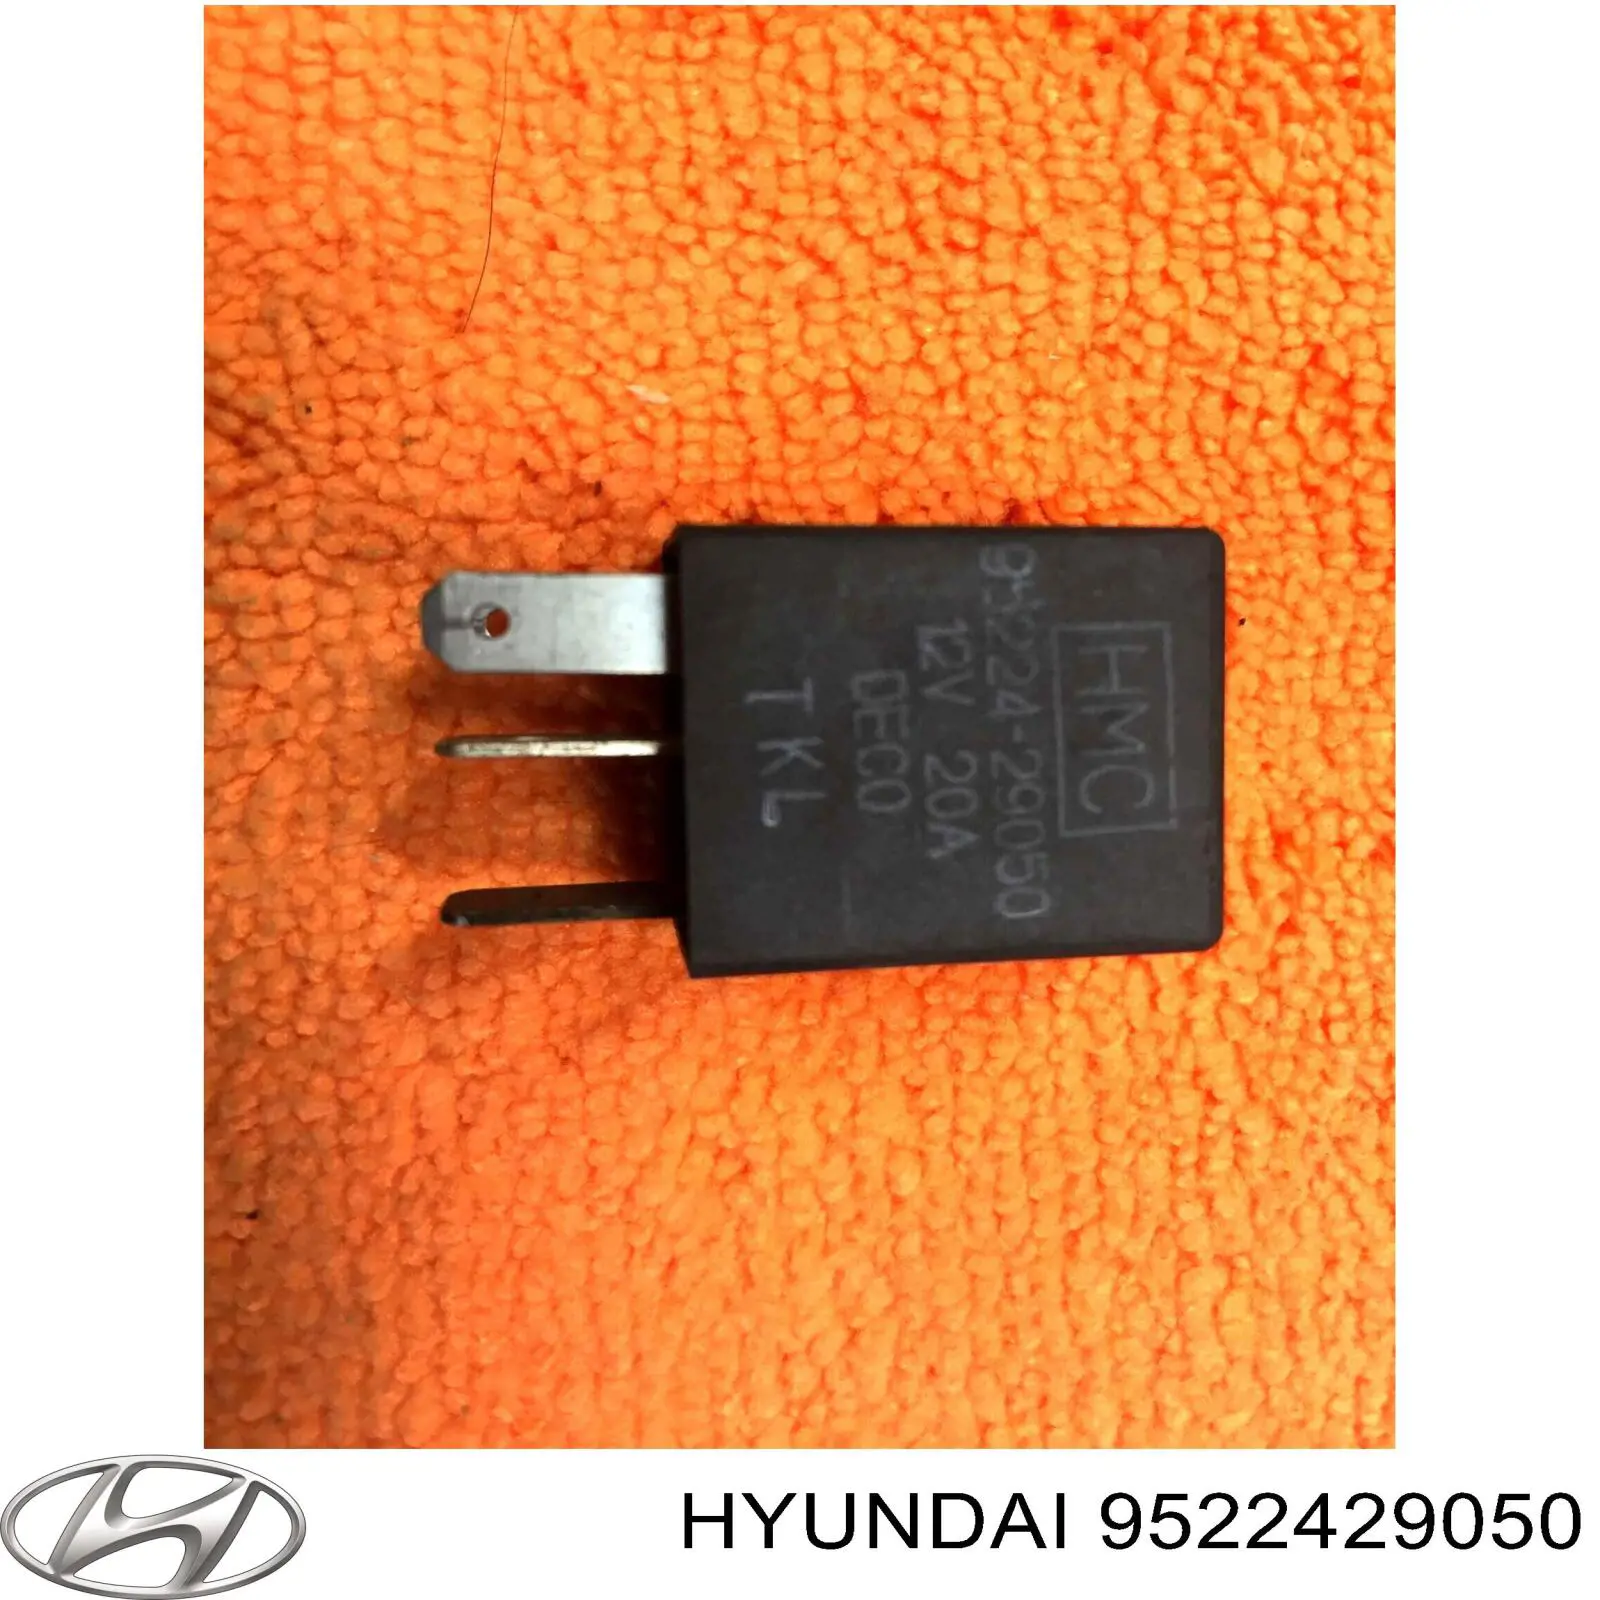 9522429050 Hyundai/Kia relé, ventilador de habitáculo